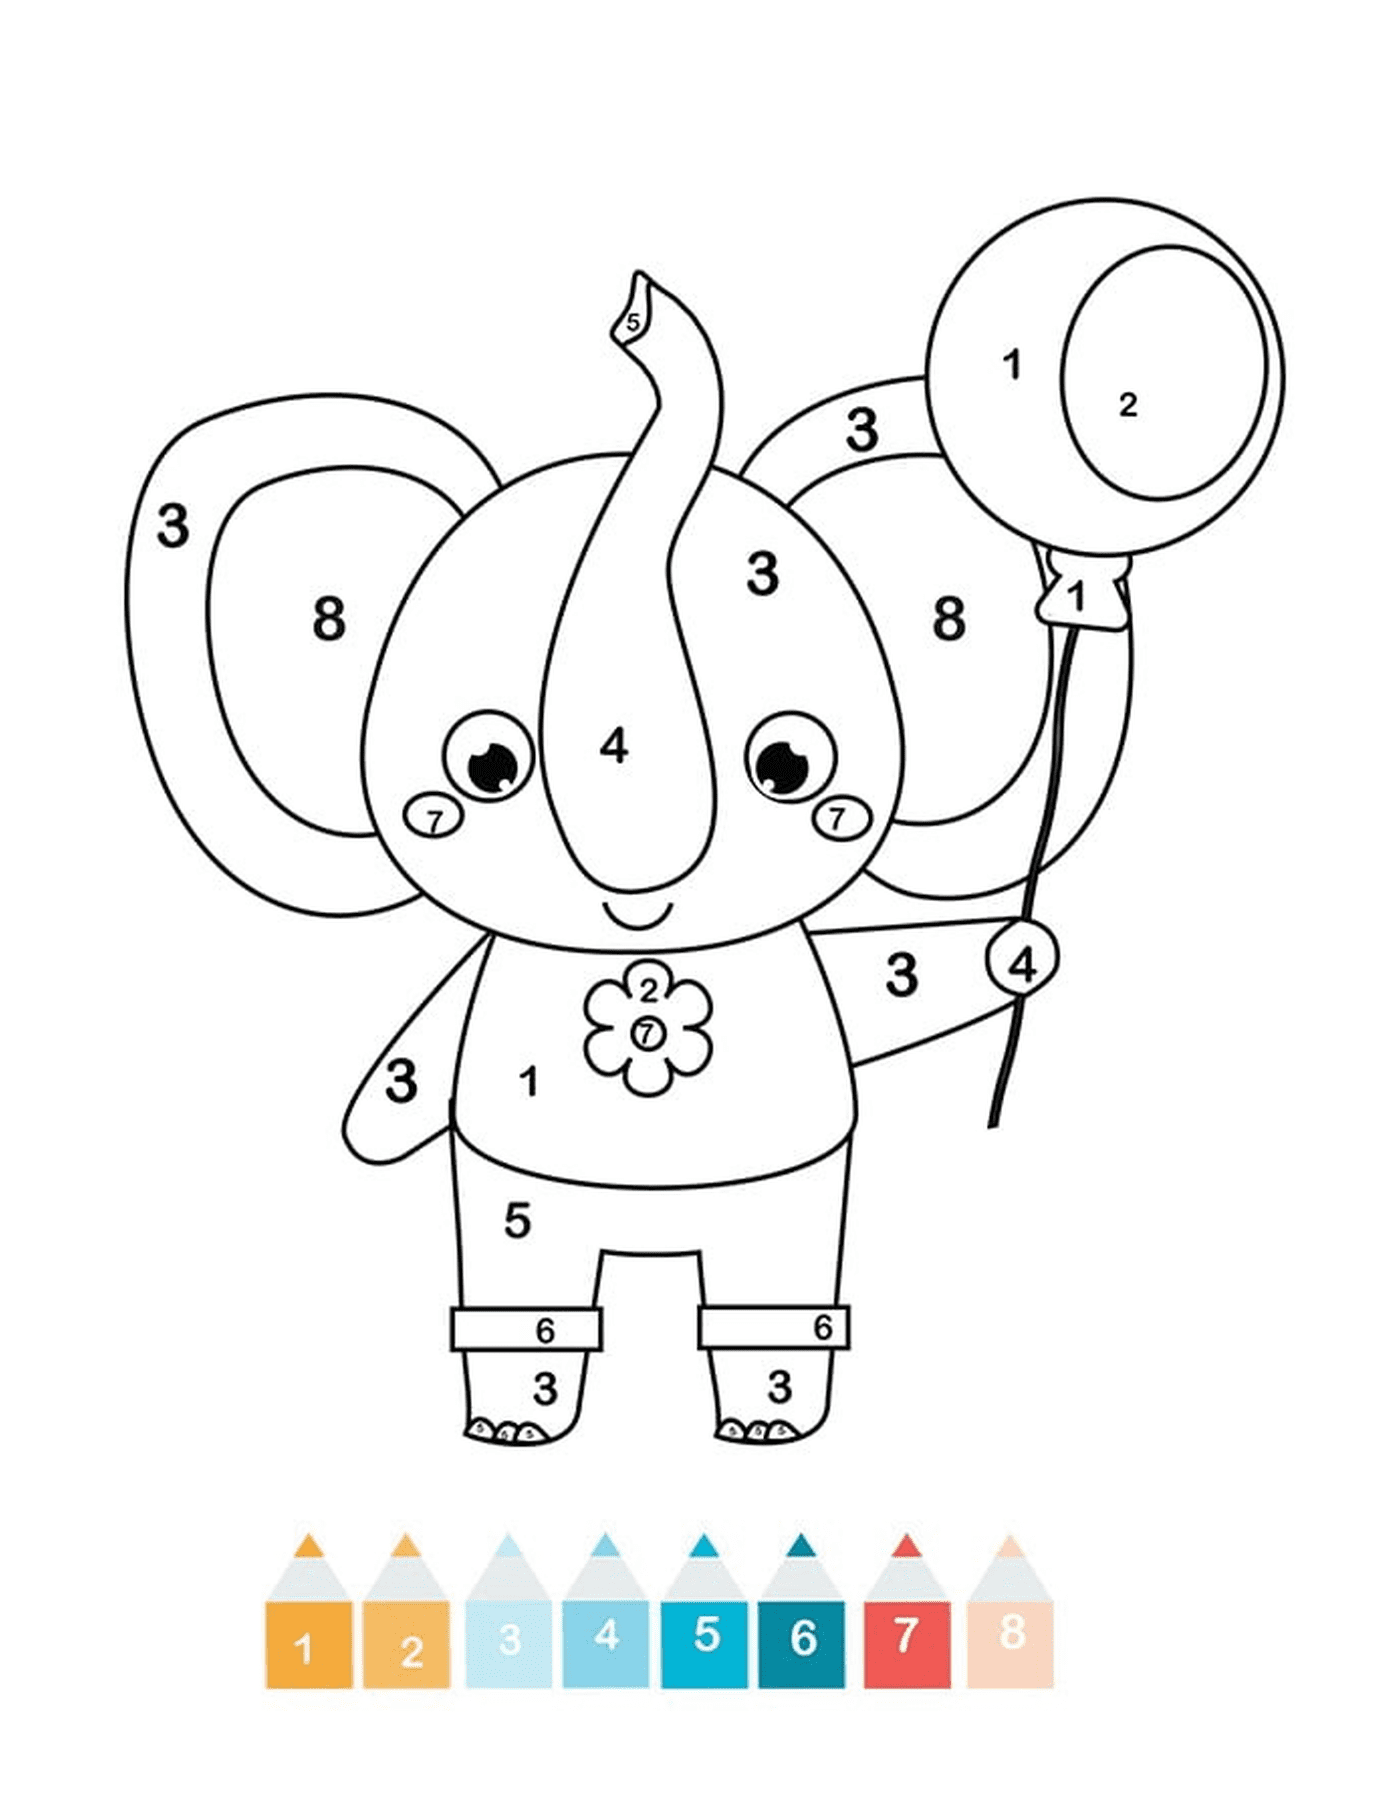  Волшебный слон CP 